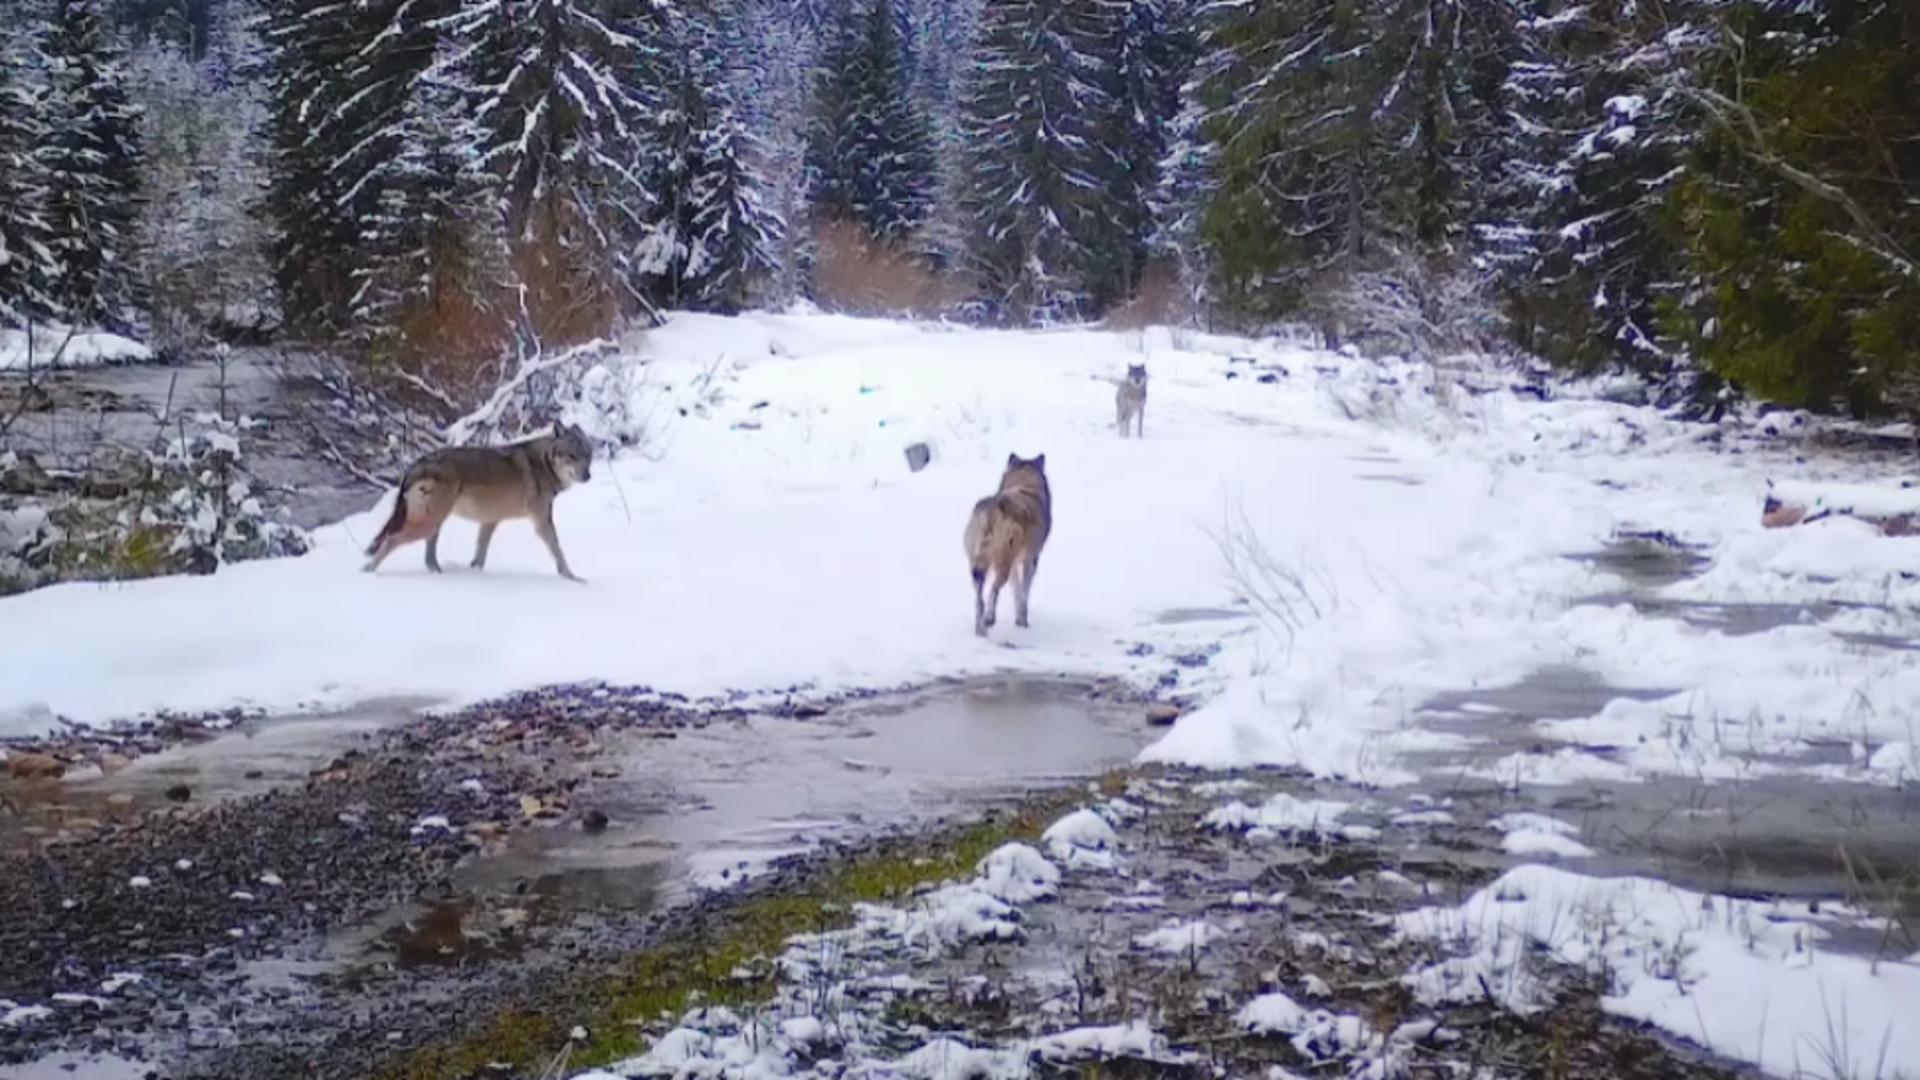 Haită de lupi, filmată pe un drum forestier din Munții Apuseni – FOTO&VIDEO